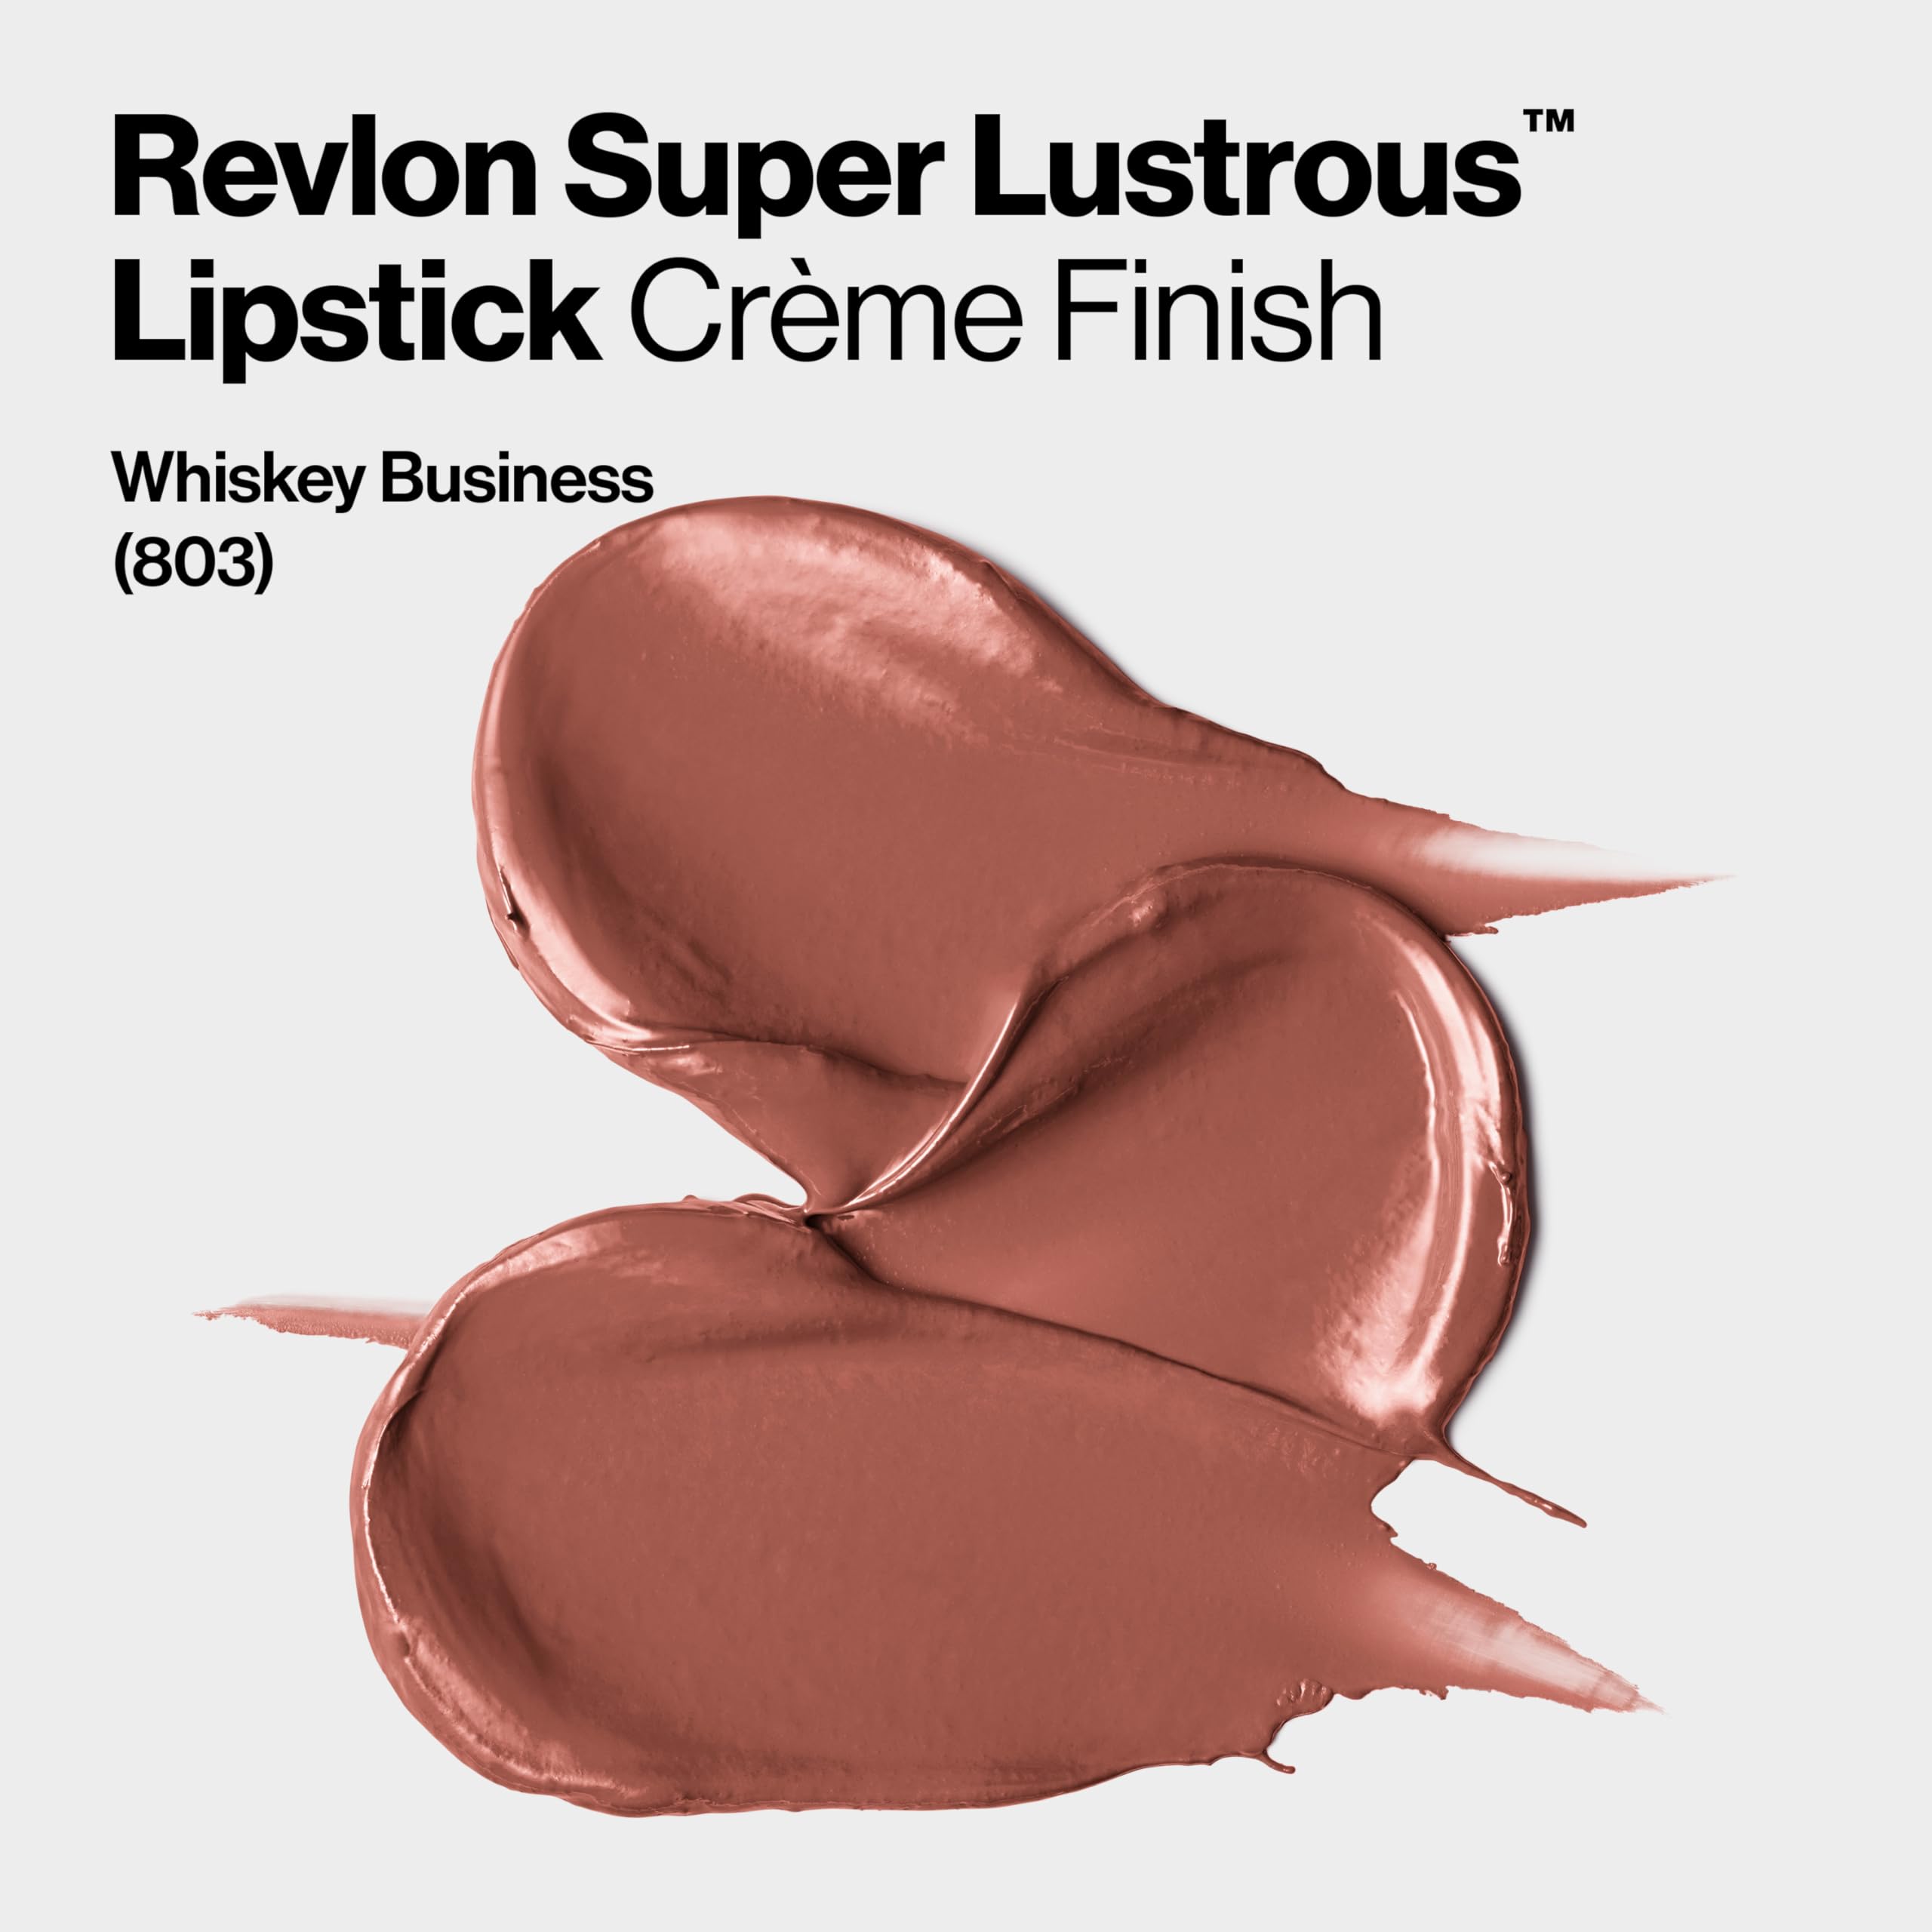 REVLON Lipstick, Super Lustrous Lipstick, Creamy Formula For Soft, Fuller-Looking Lips, Moisturized Feel, 803 Whiskey Business, 0.15 oz